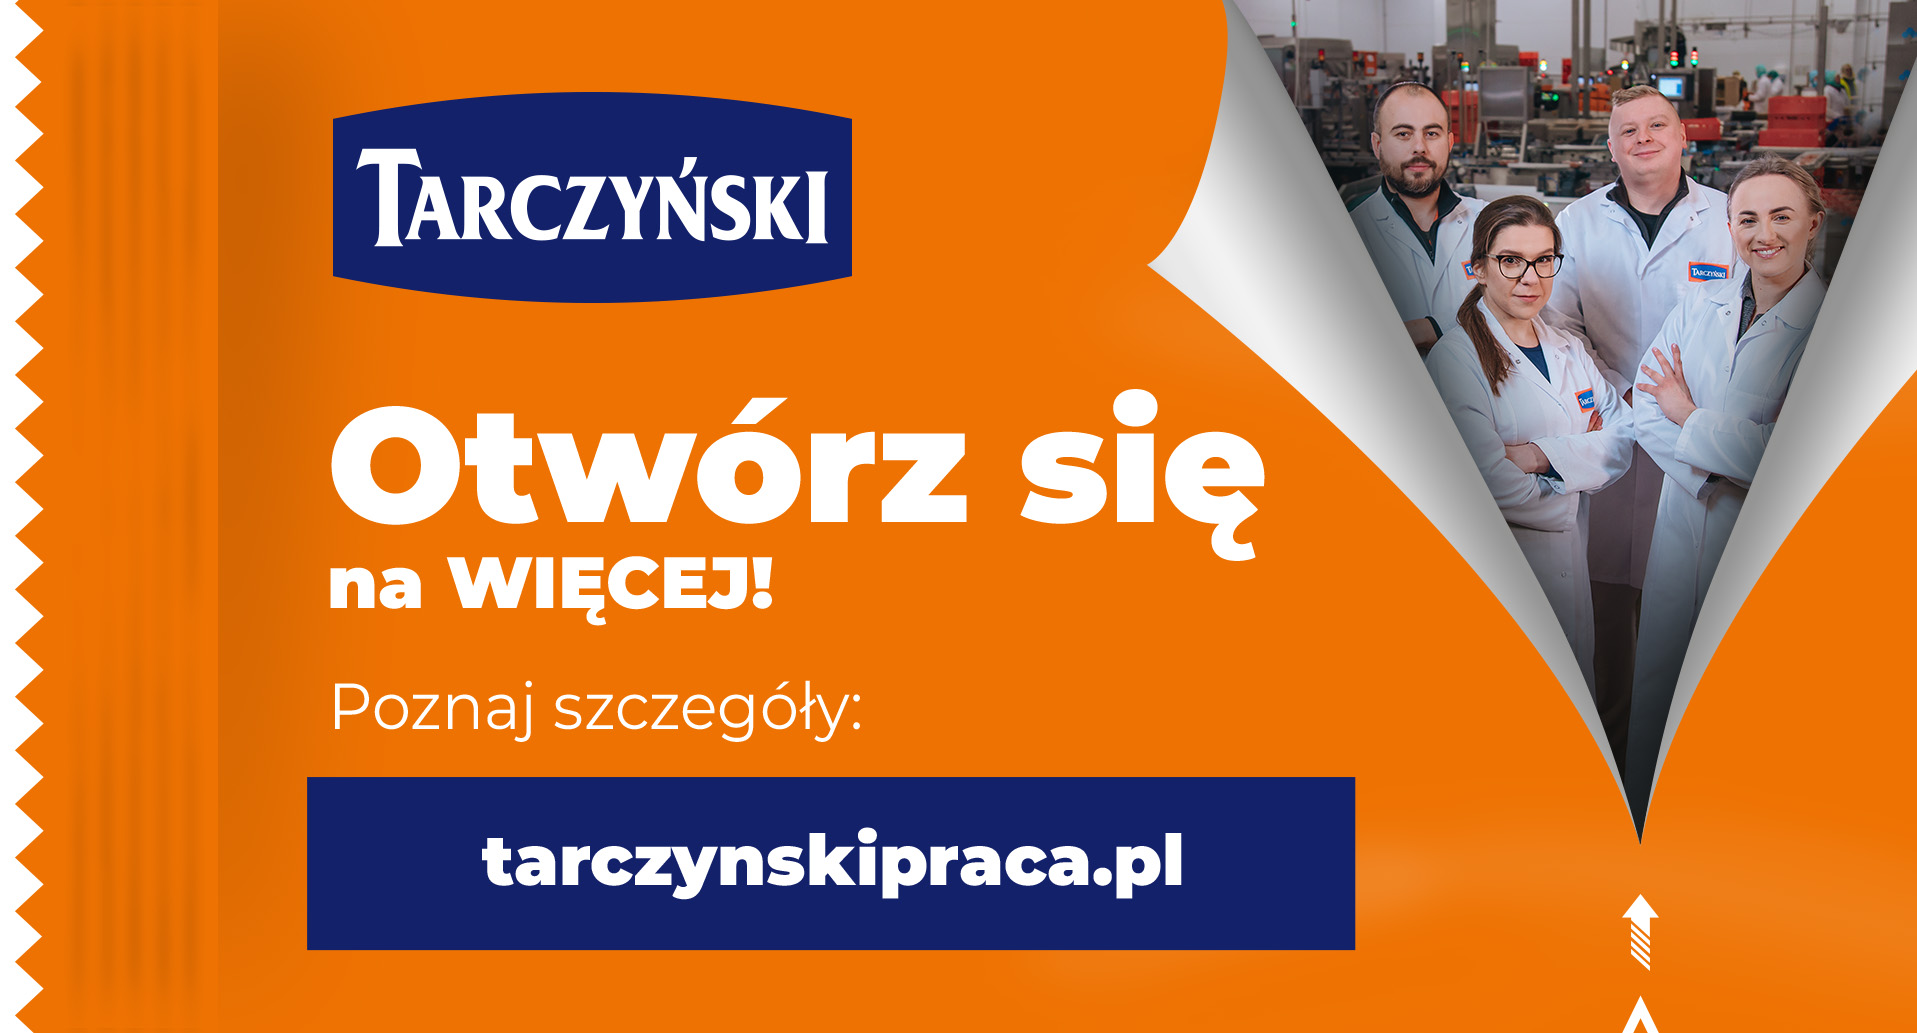 „Otwórz się na więcej” – Tarczyński S.A. z nową kampanią